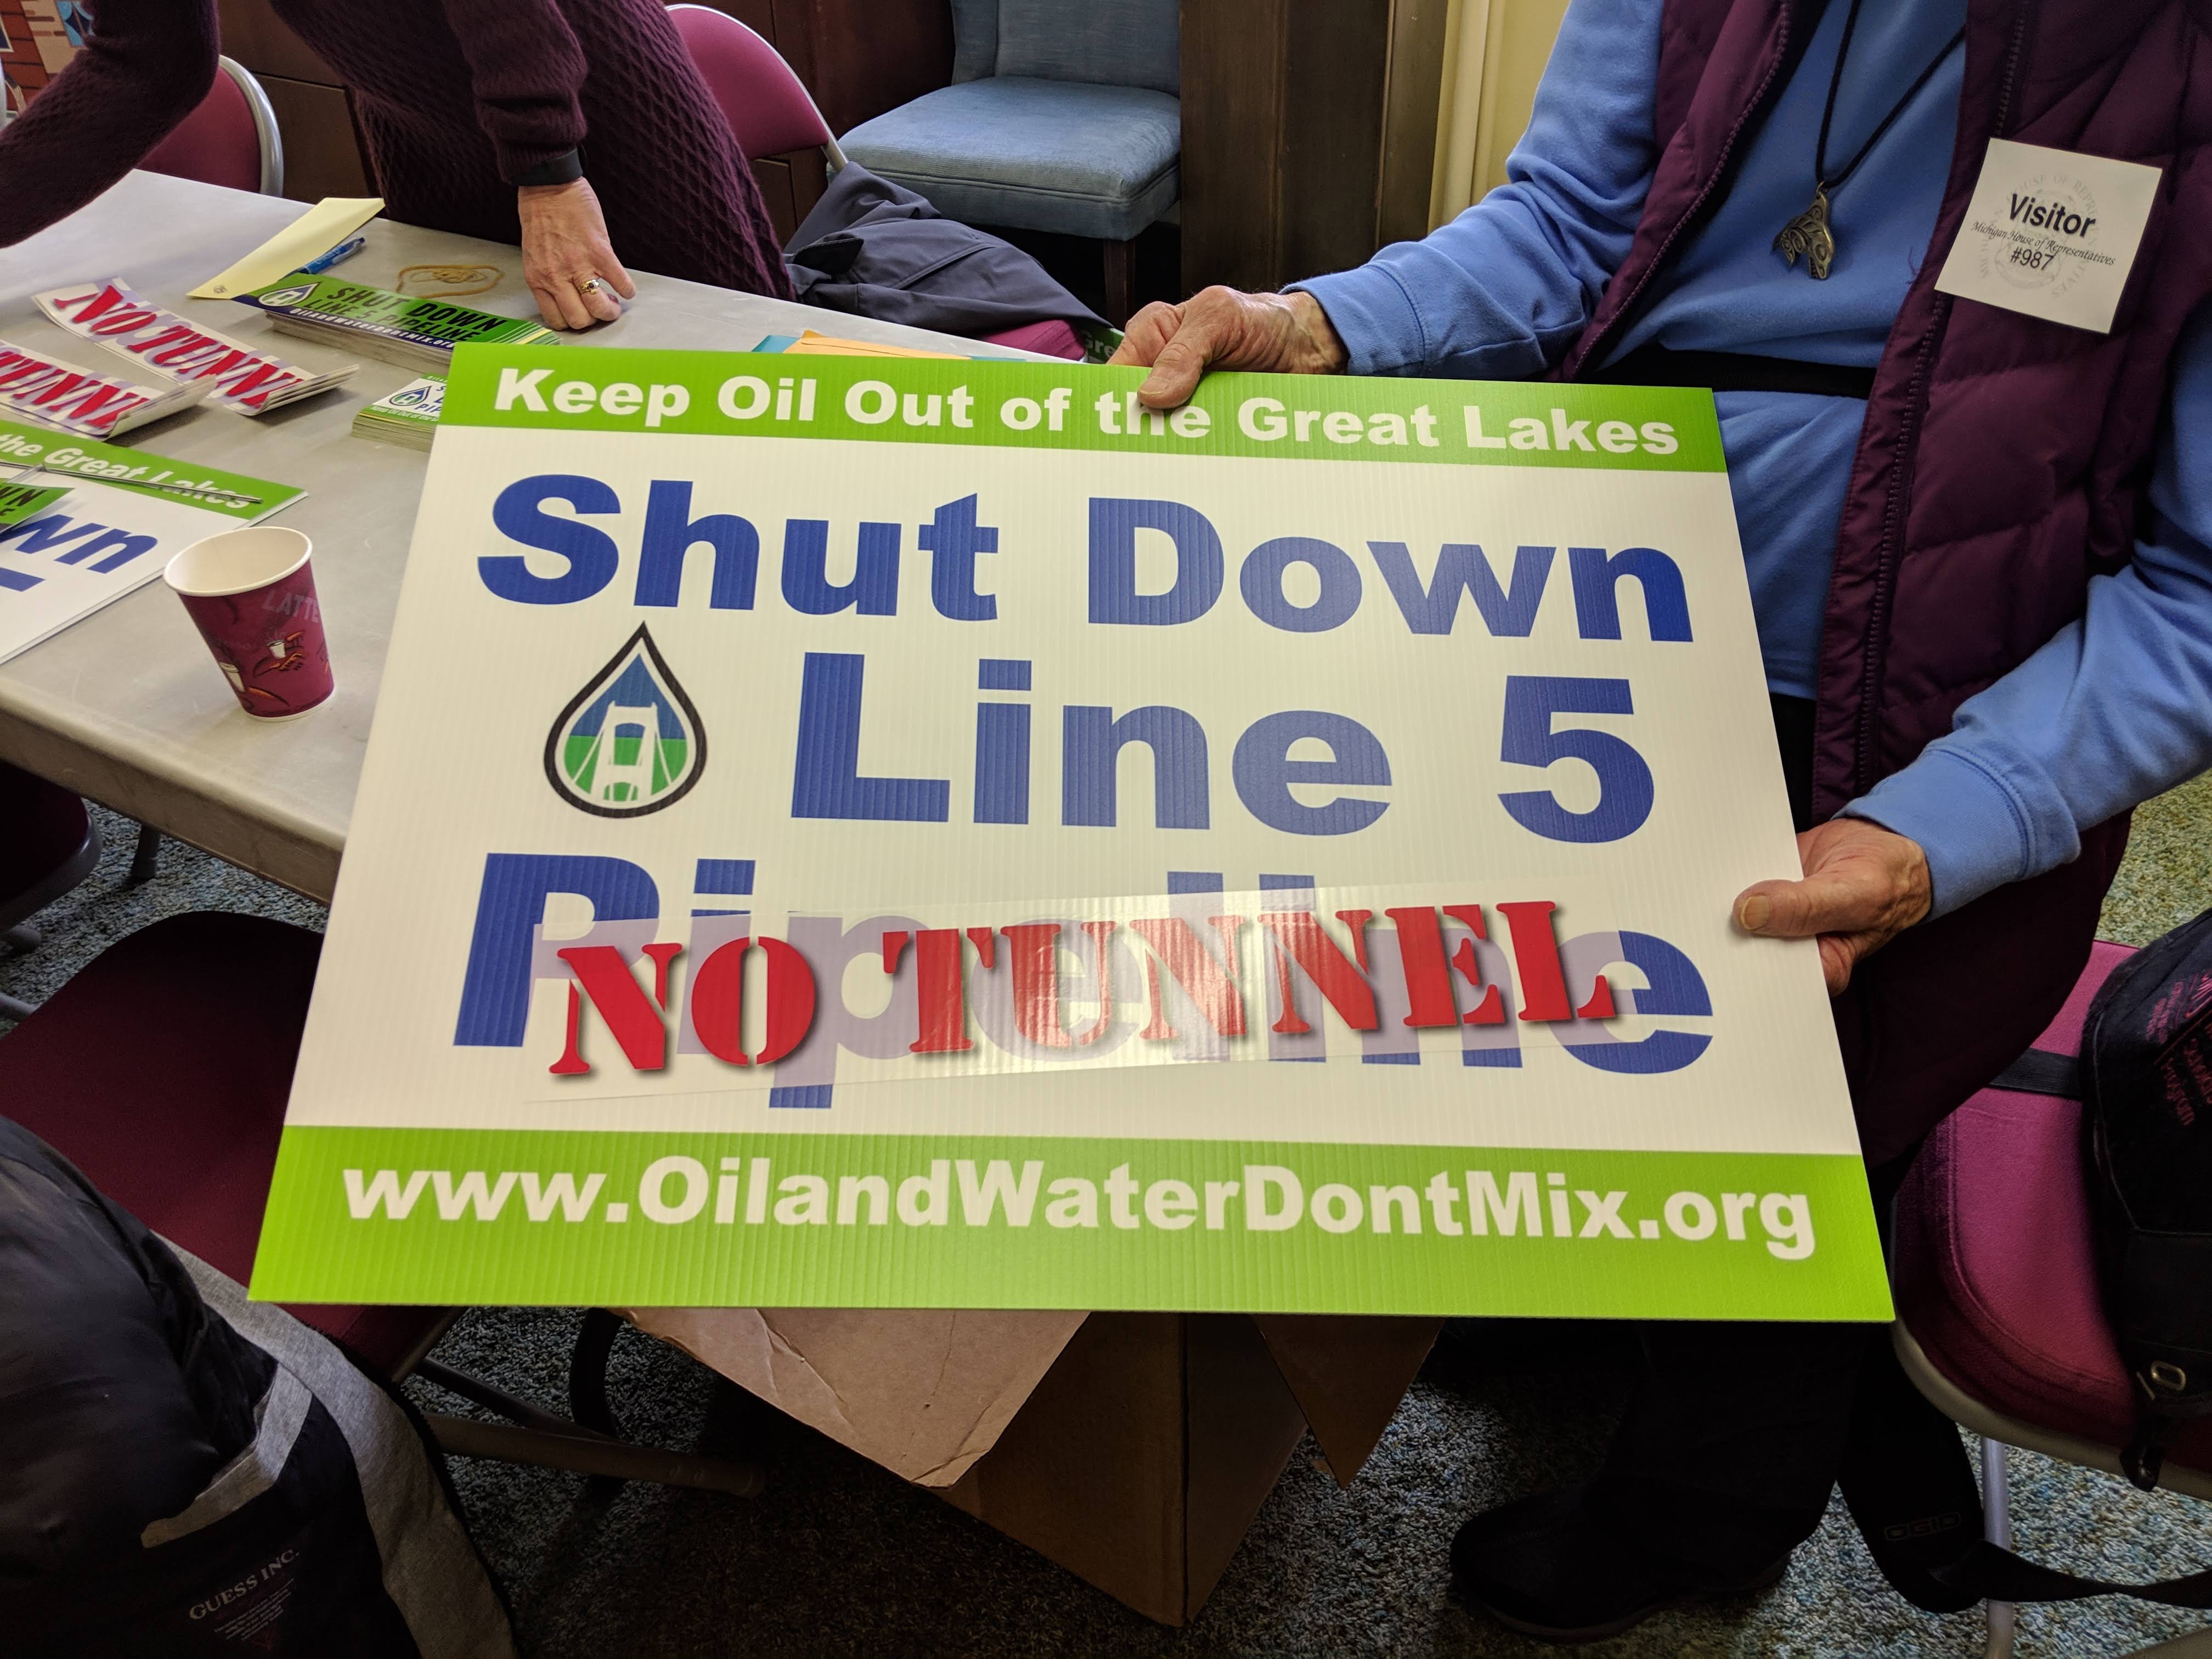 Shut Down Line 5 - No Tunnel